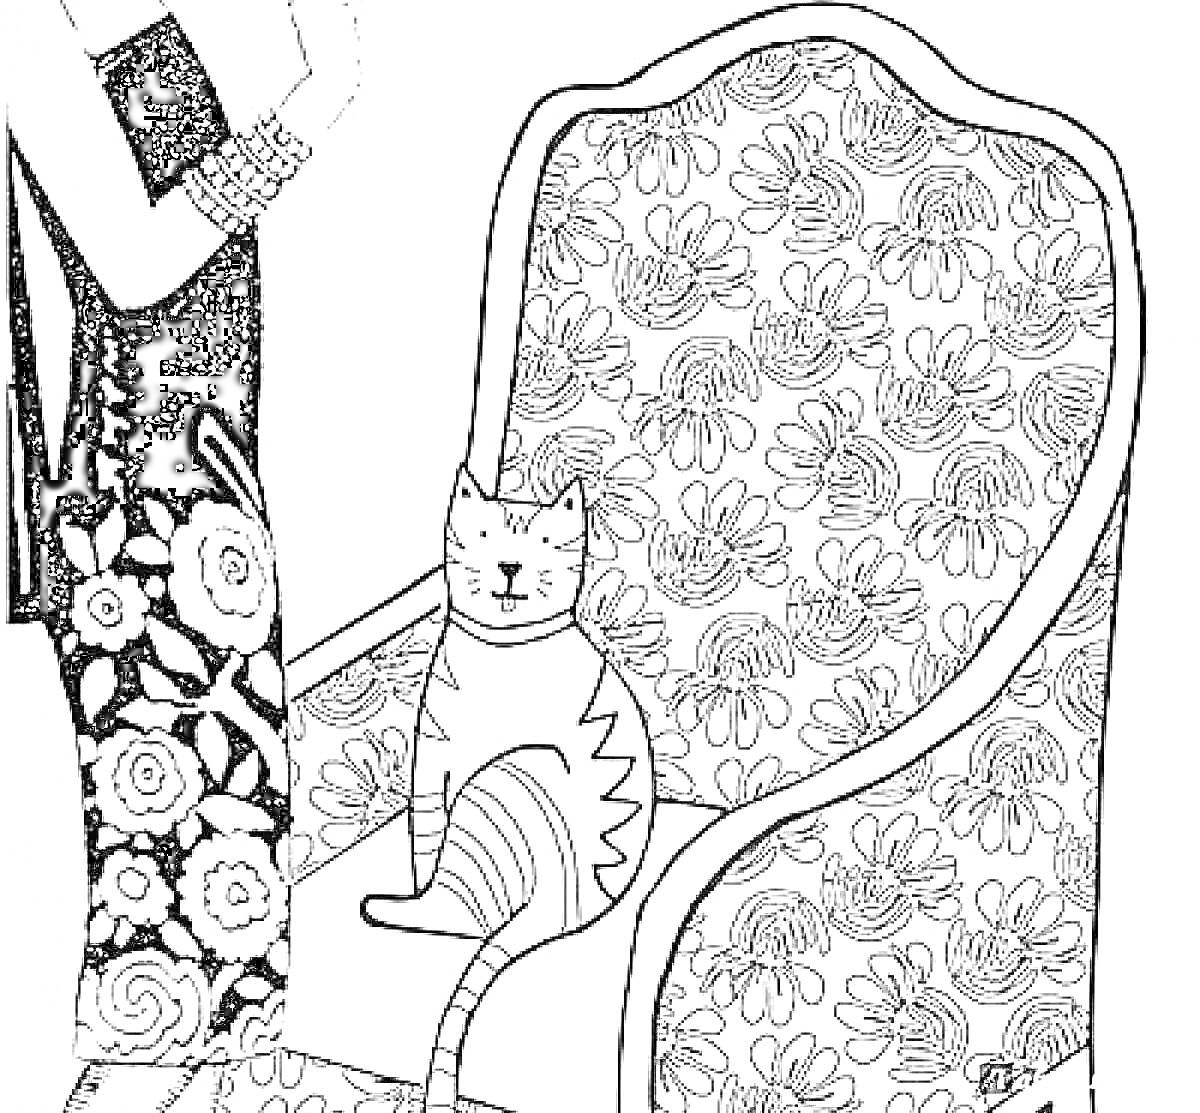 Женщина в платье с цветочным узором, браслет на руке, кресло с цветочным узором, сидящий на кресле кот